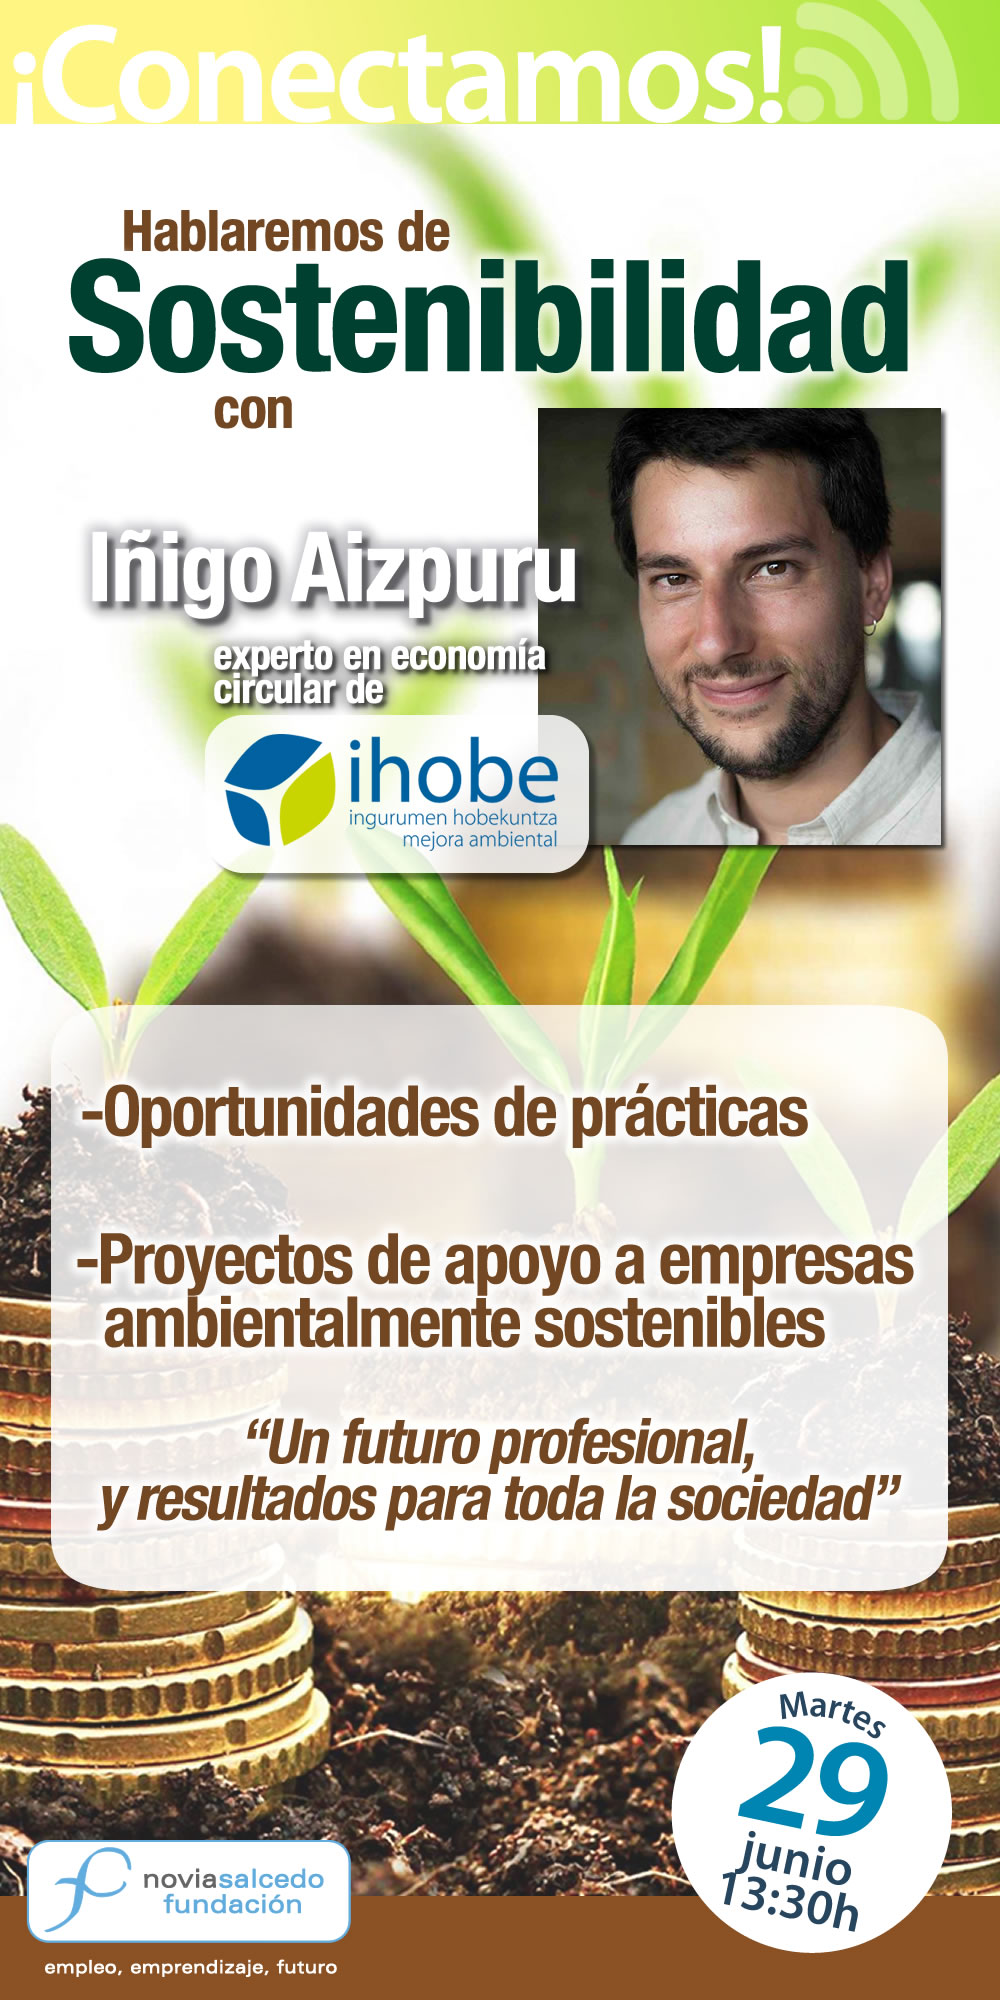 Conectamos con Iñigo Aizpuru de Ihobe. Hablaremos de Sostenibilidad, oportunidades de prácticas y proyectos en empresas ambientalmente sostenibles.